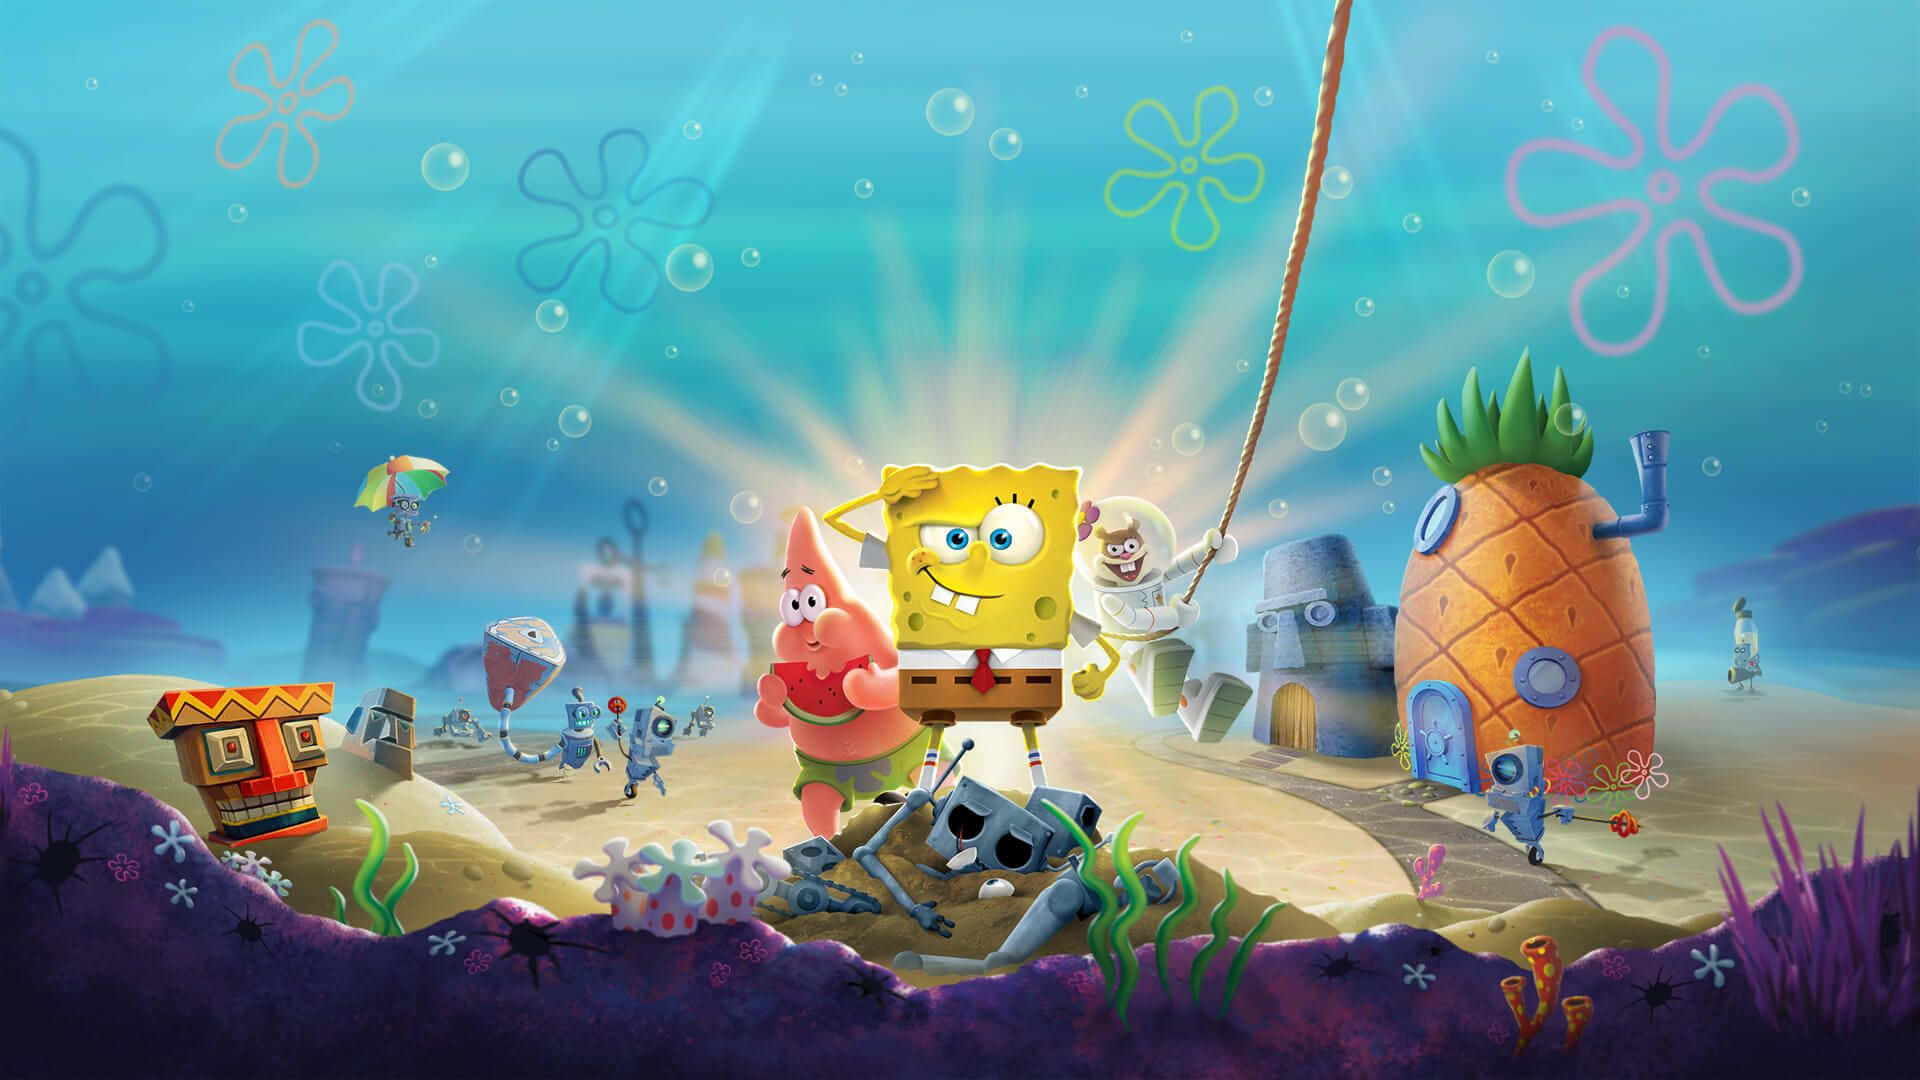 Brighten Up Your Desktop With This Classic Image Of Spongebob! Wallpaper